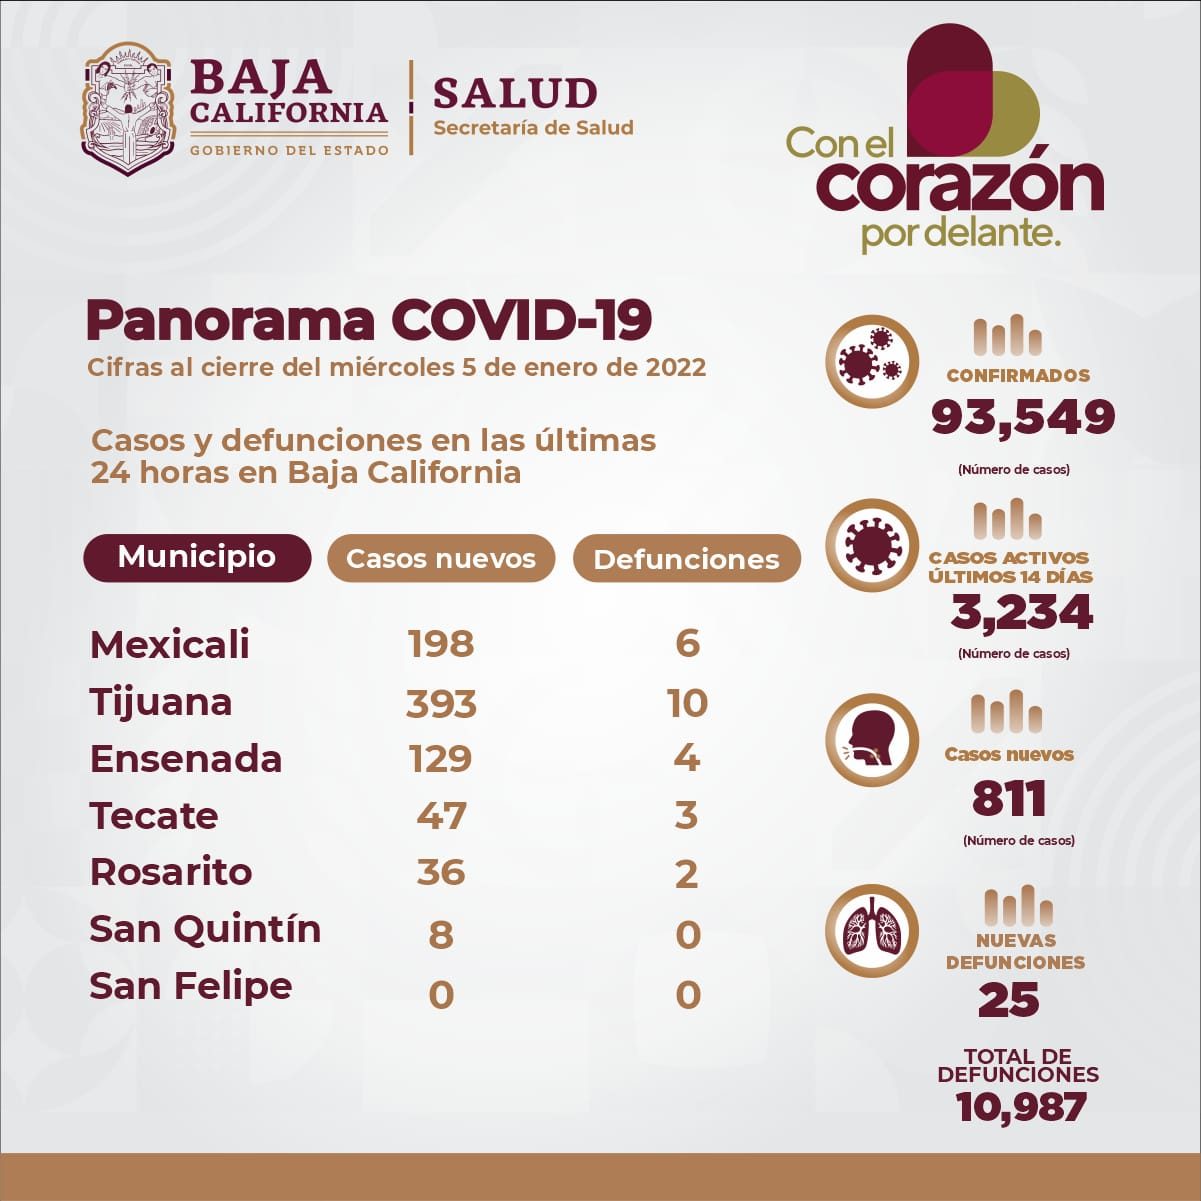 Panorama Covid-19 en Baja California al 5 de enero de 2022. 